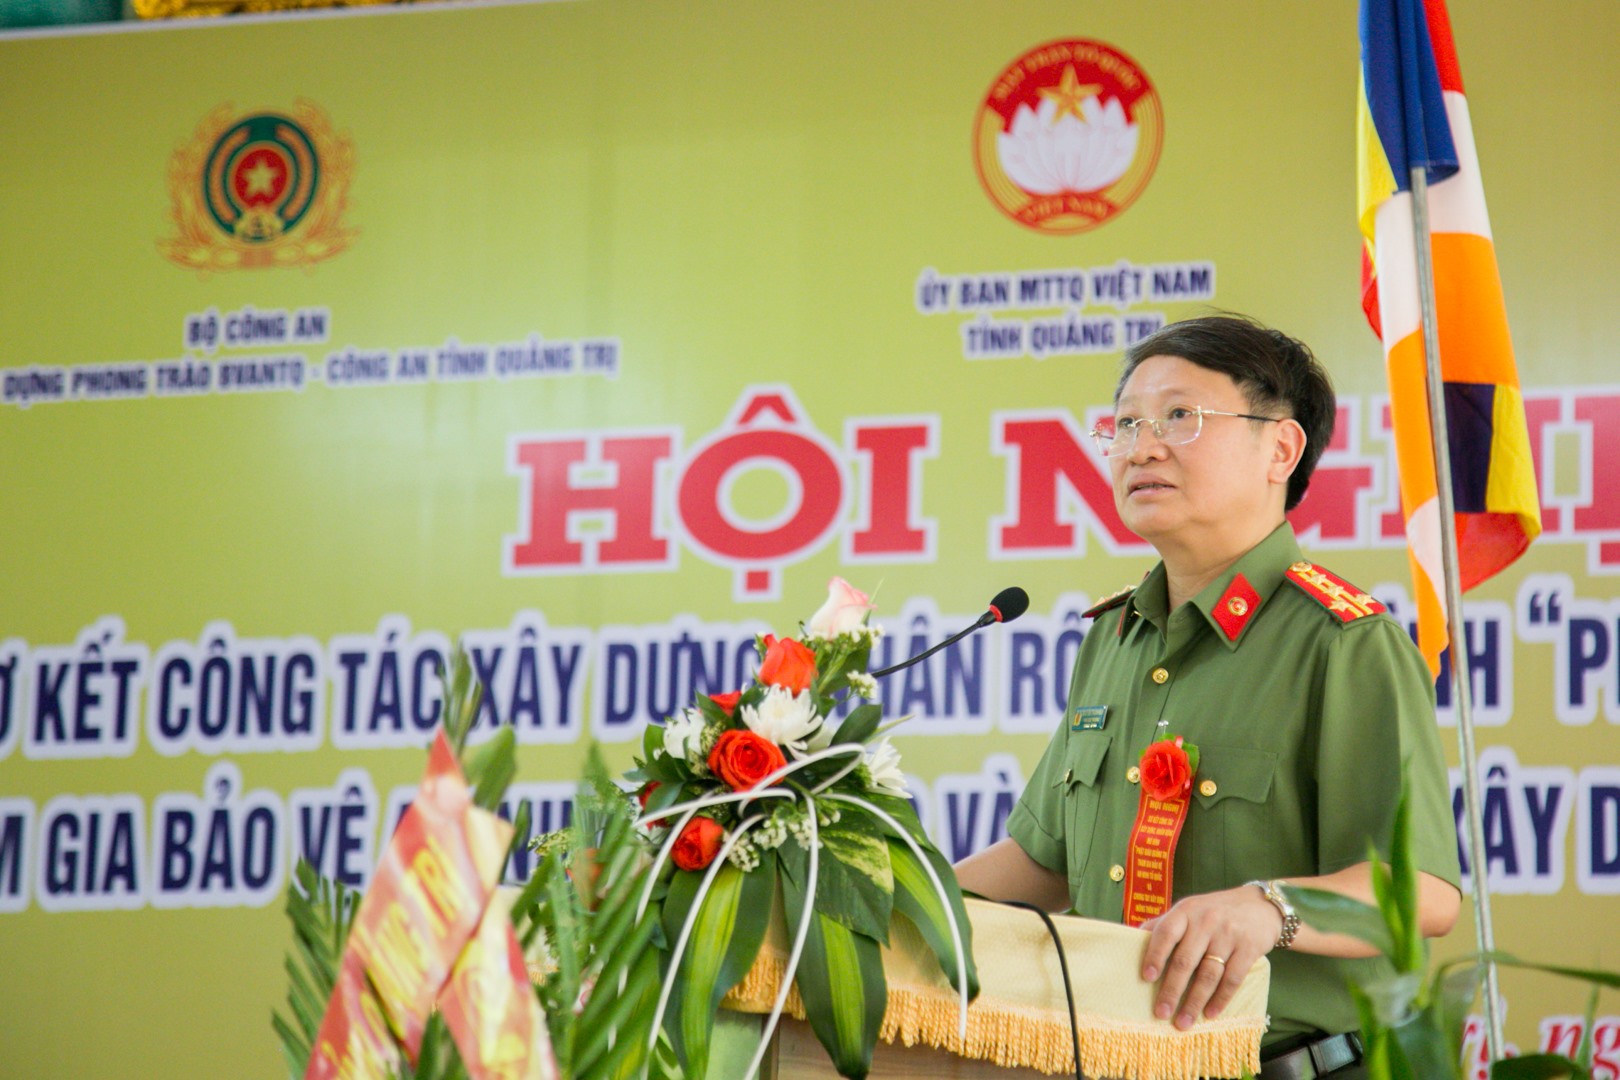 Phó Cục trưởng Cục Xây dựng phong trào bảo vệ ANTQ Bộ Công an, Đại tá Nguyễn Thanh Bình đề nghị Quảng Trị tiếp tục duy trì và nhân rộng mô hình trong toàn tỉnh - Ảnh: Lê Trường